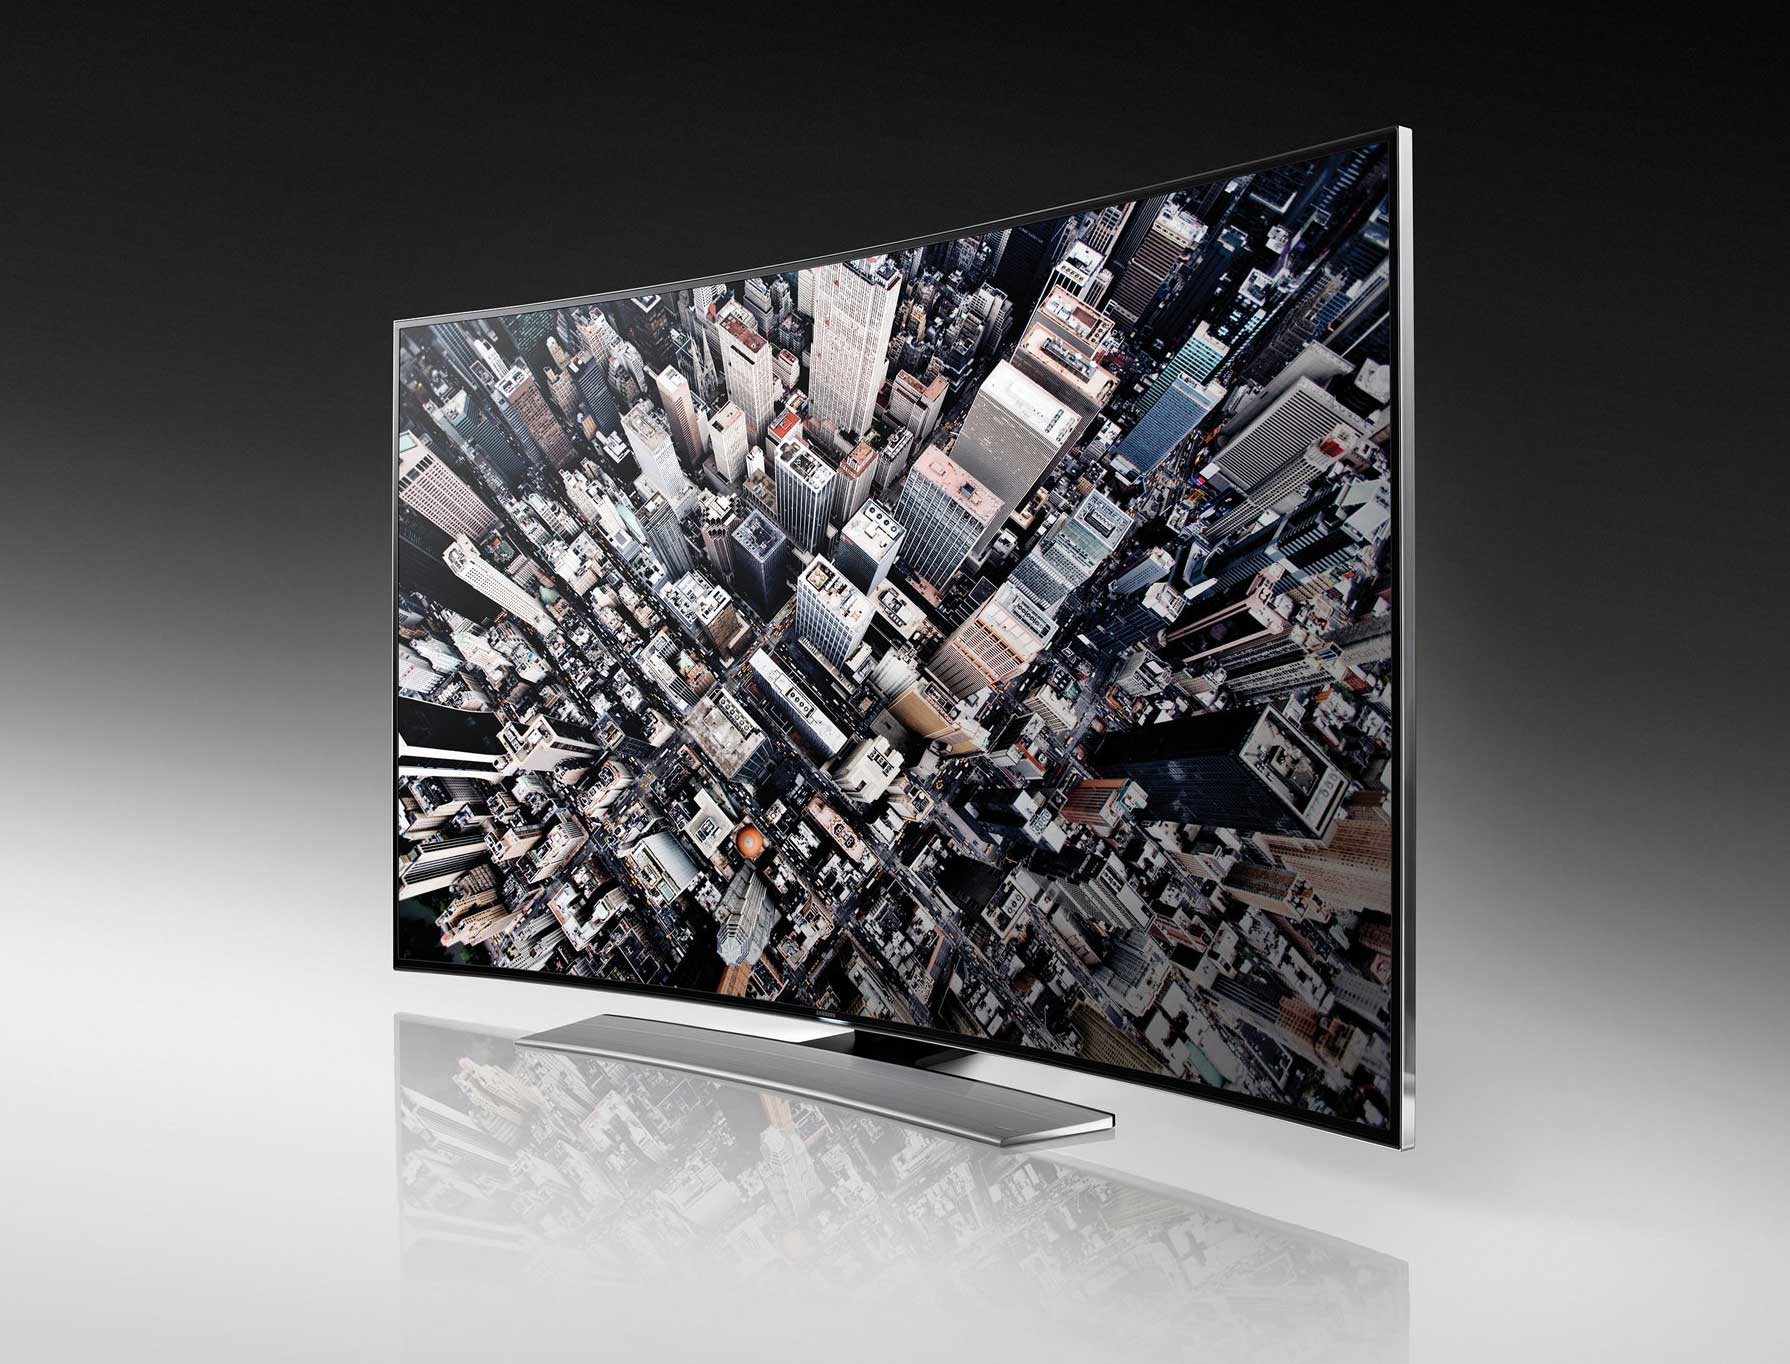 Samsung U9000 UHD LED Smart TV Series